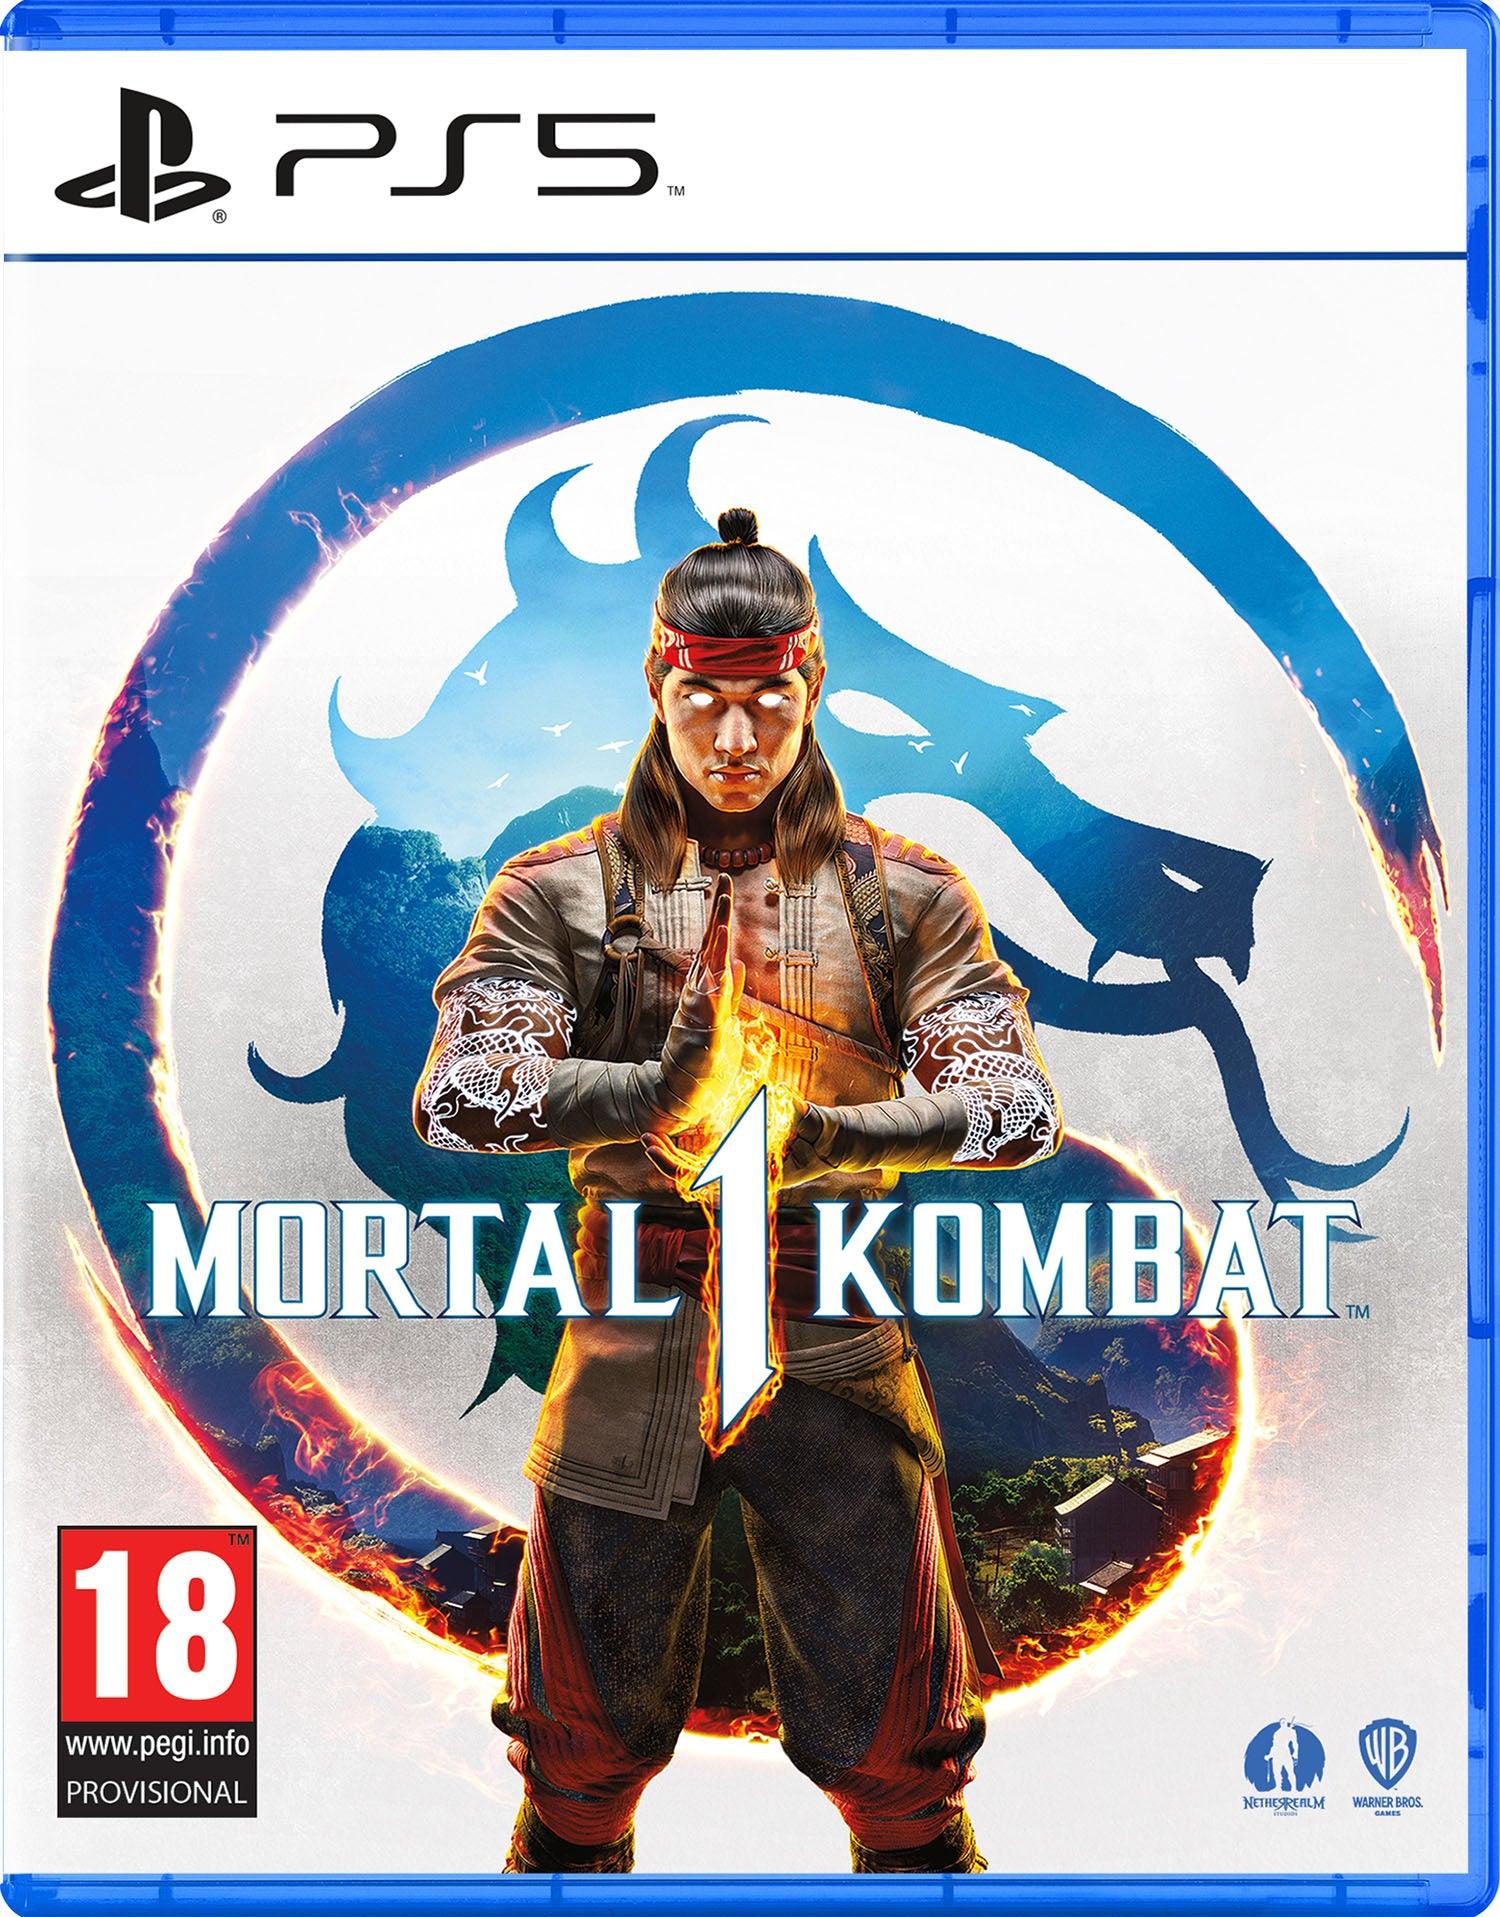 Mortal Kombat 1 - Want a New Gadget